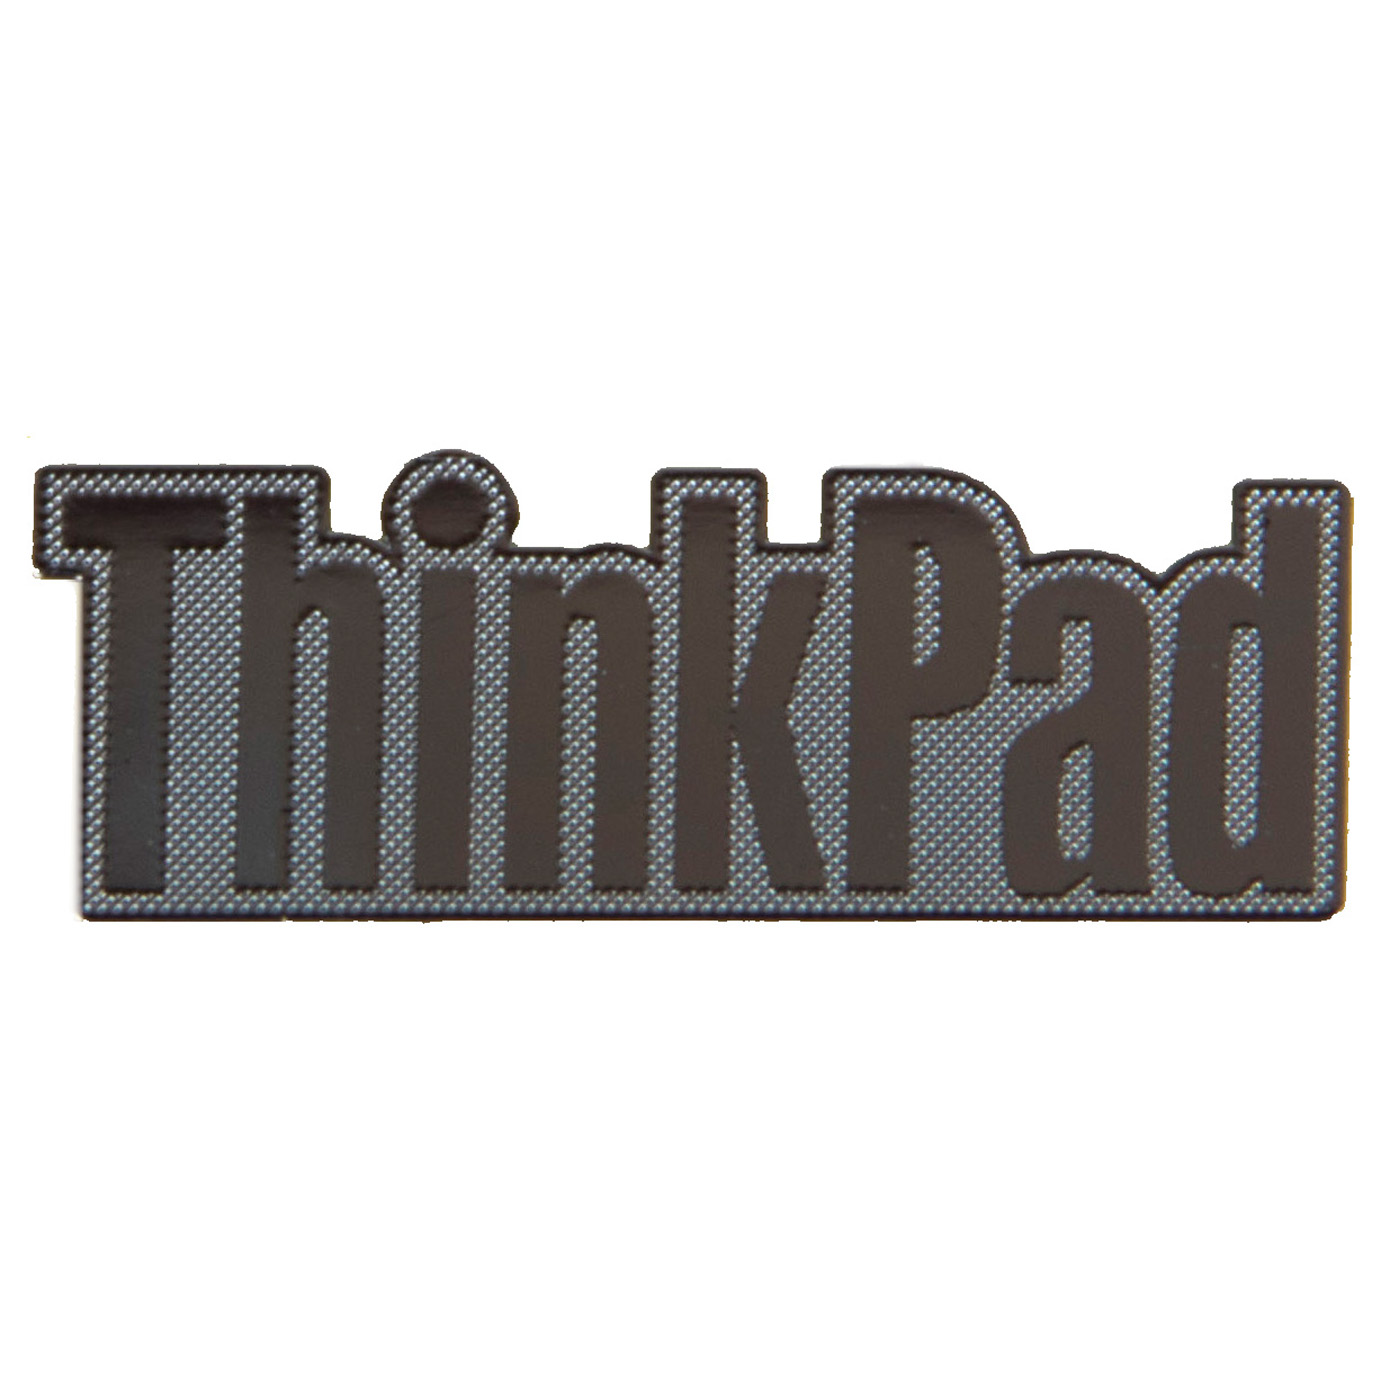 Naklejka logotyp Lenovo ThinkPad silver 31 x 11 mm